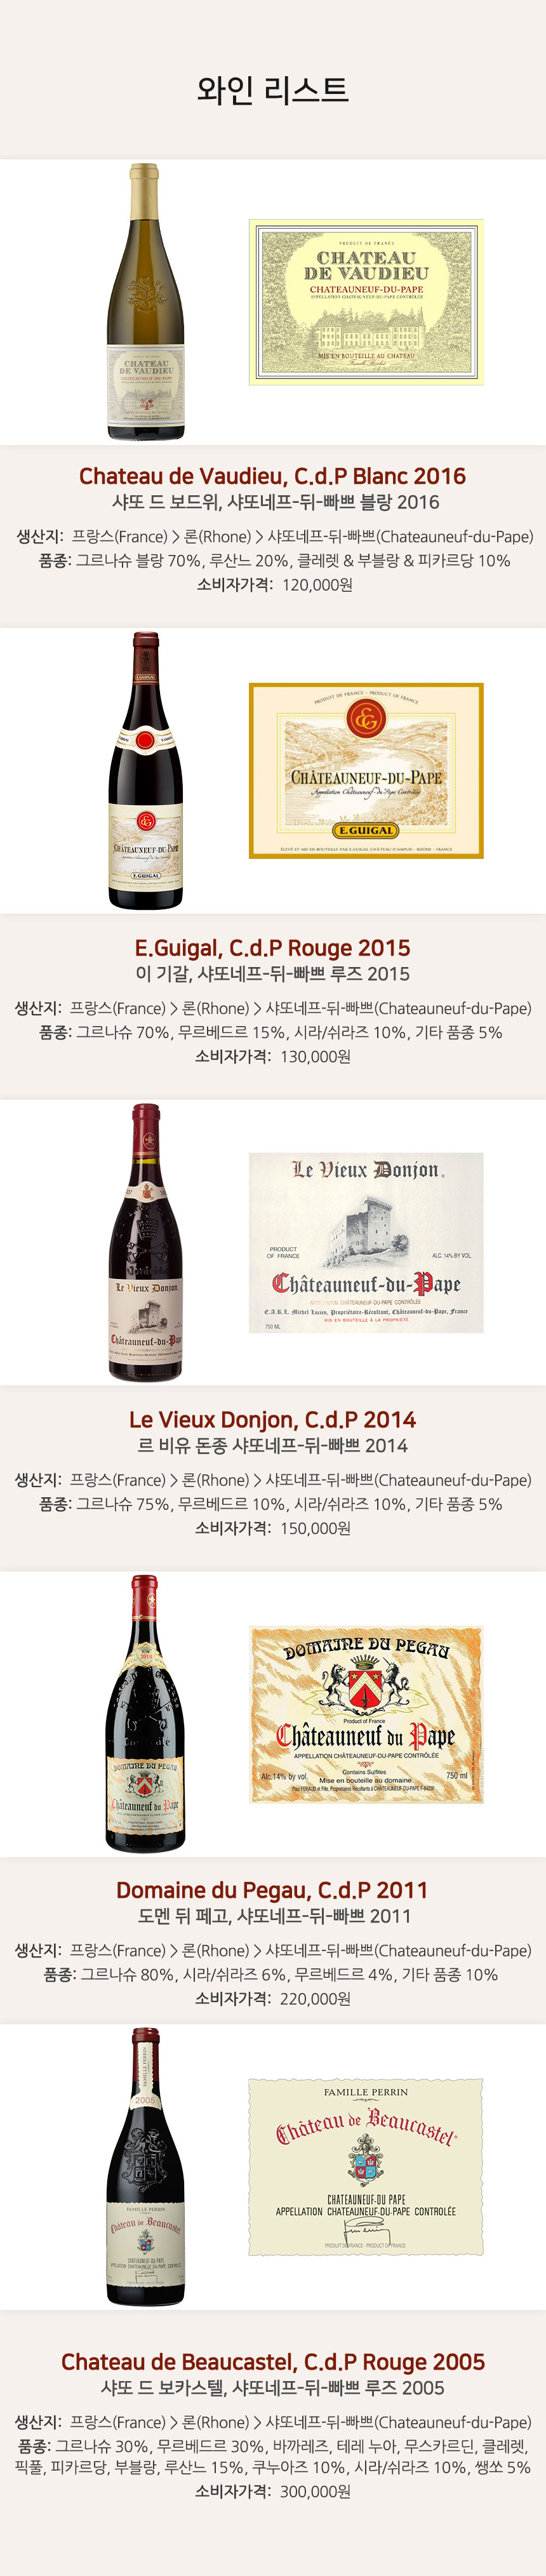 1월 금요시음회 - 교황의 와인, Châteauneuf du Pape 와인리스트 / Chateau de Vaudieu, C.d.P Blanc 2016(샤또 드 보드위, 샤또네프-뒤-빠쁘 블랑 2016), E.Guigal, C.d.P Rouge 2015(이 기갈, 샤또네프-뒤-빠쁘 루즈 2015), Le Vieux Donjon, C.d.P 2014(르 비유 돈종 샤또네프-뒤-빠쁘 2014), Domaine du Pegau, C.d.P 2011(도멘 뒤 페고, 샤또네프-뒤-빠쁘 2011), Chateau de Beaucastel, C.d.P Rouge 2005(샤또 드 보카스텔, 샤또네프-뒤-빠쁘 루즈 2005)